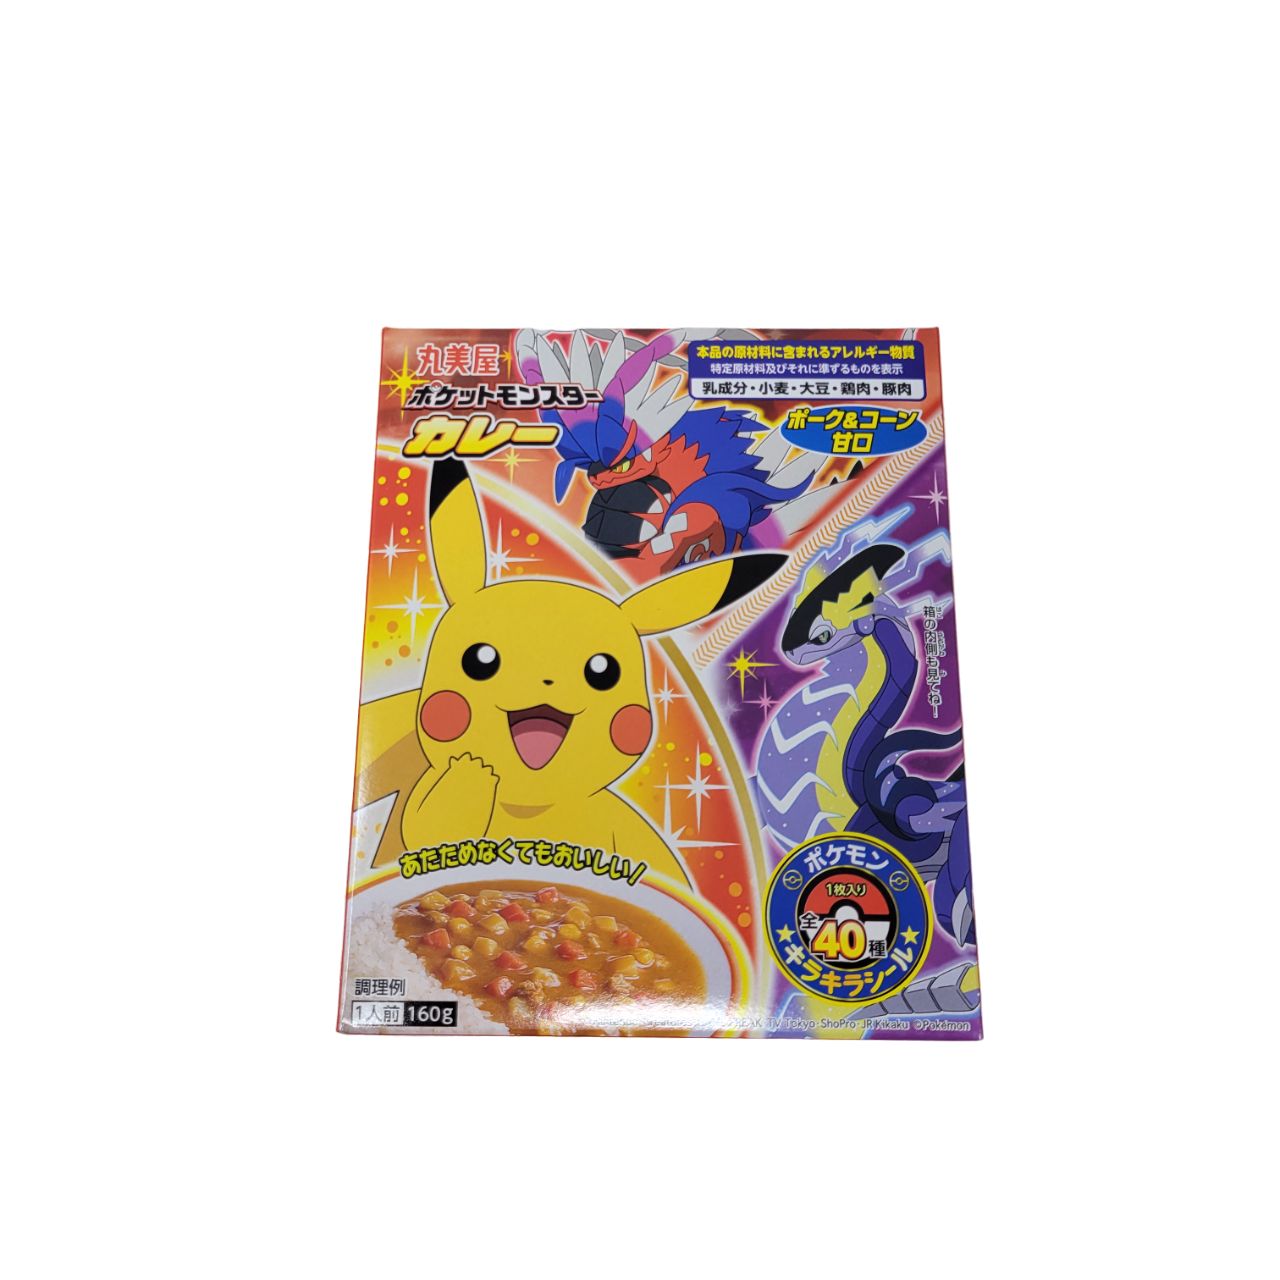 Mild　Pokemon　–　Premium　Food　Curry　Mississauga　Al　Mart